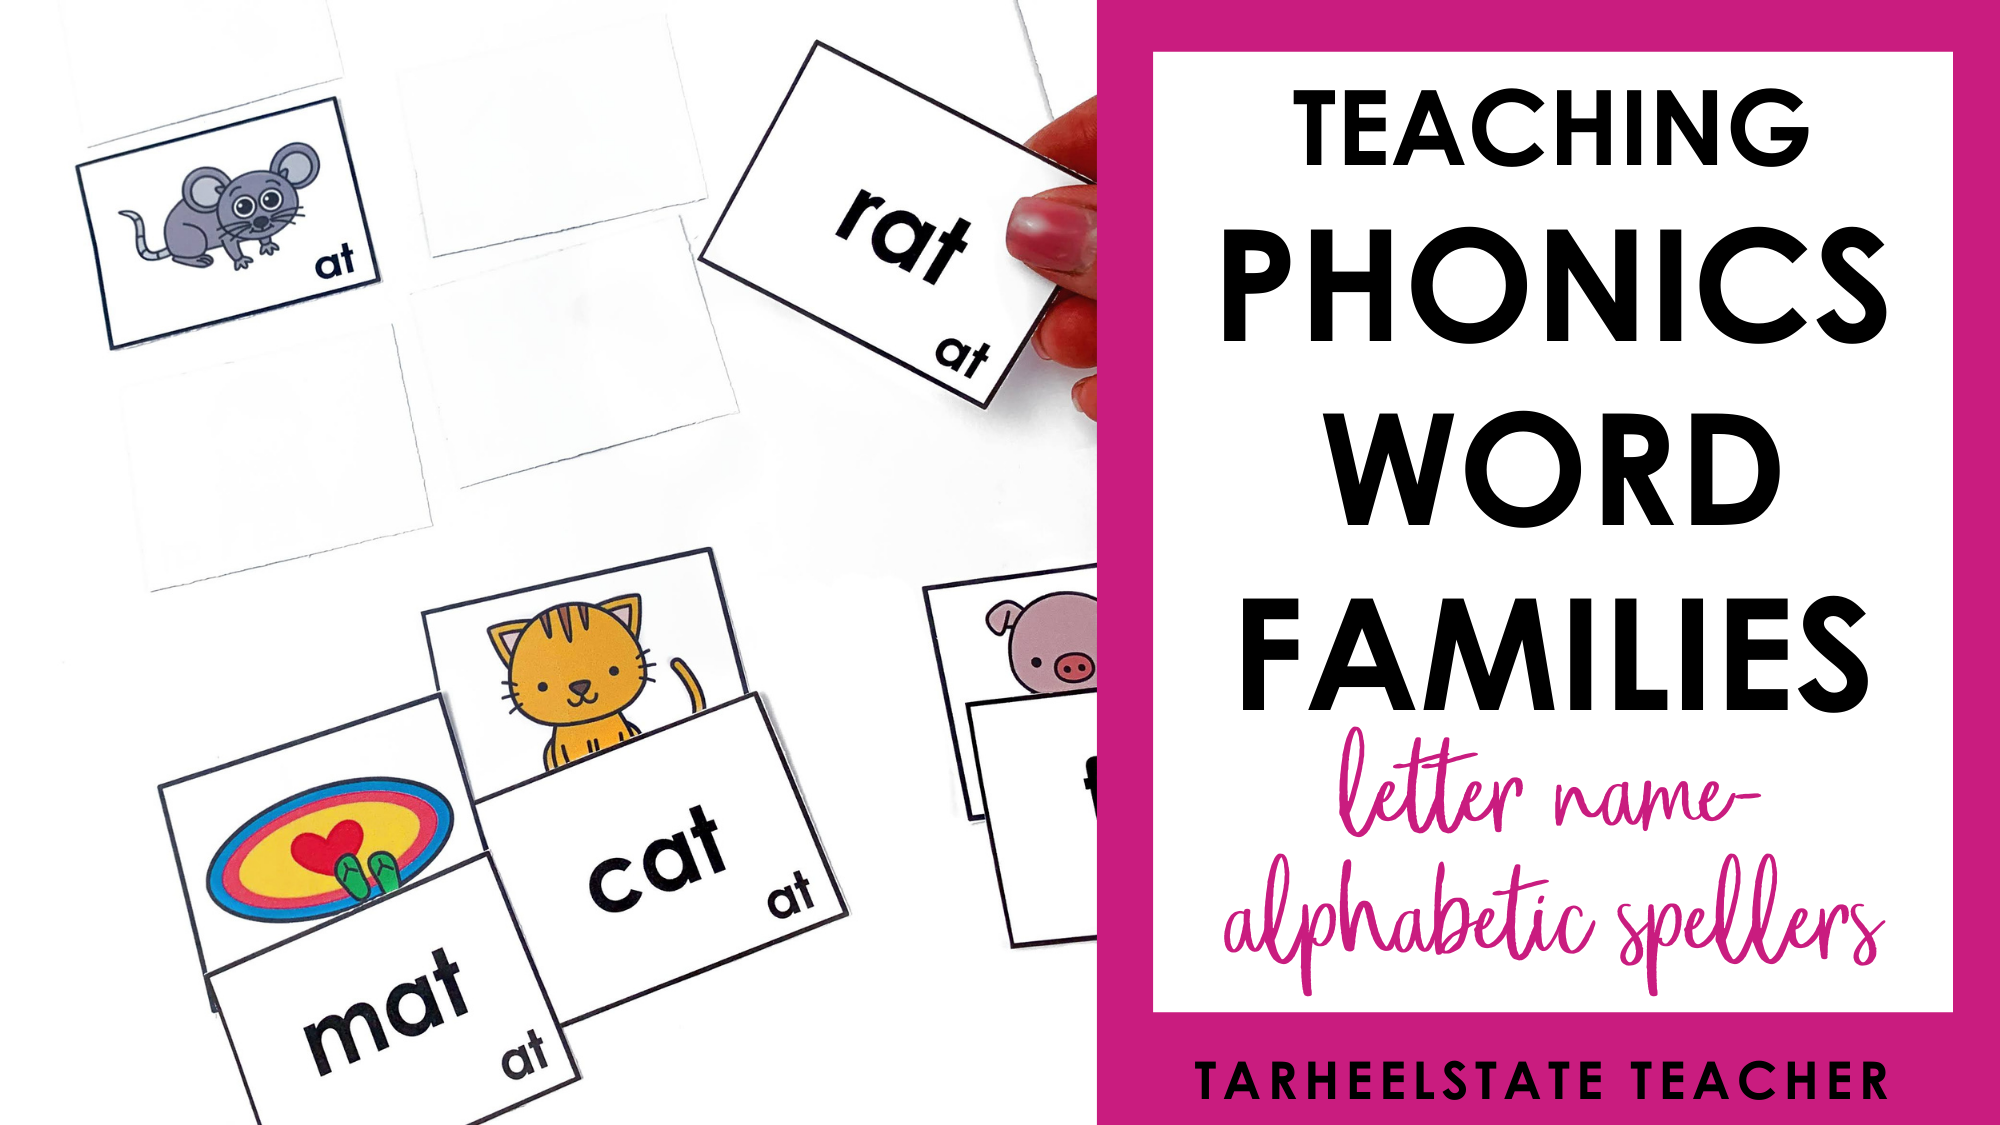 Teaching Phonics Word Families - Letter Name-Alphabetic Spellers —  Tarheelstate Teacher